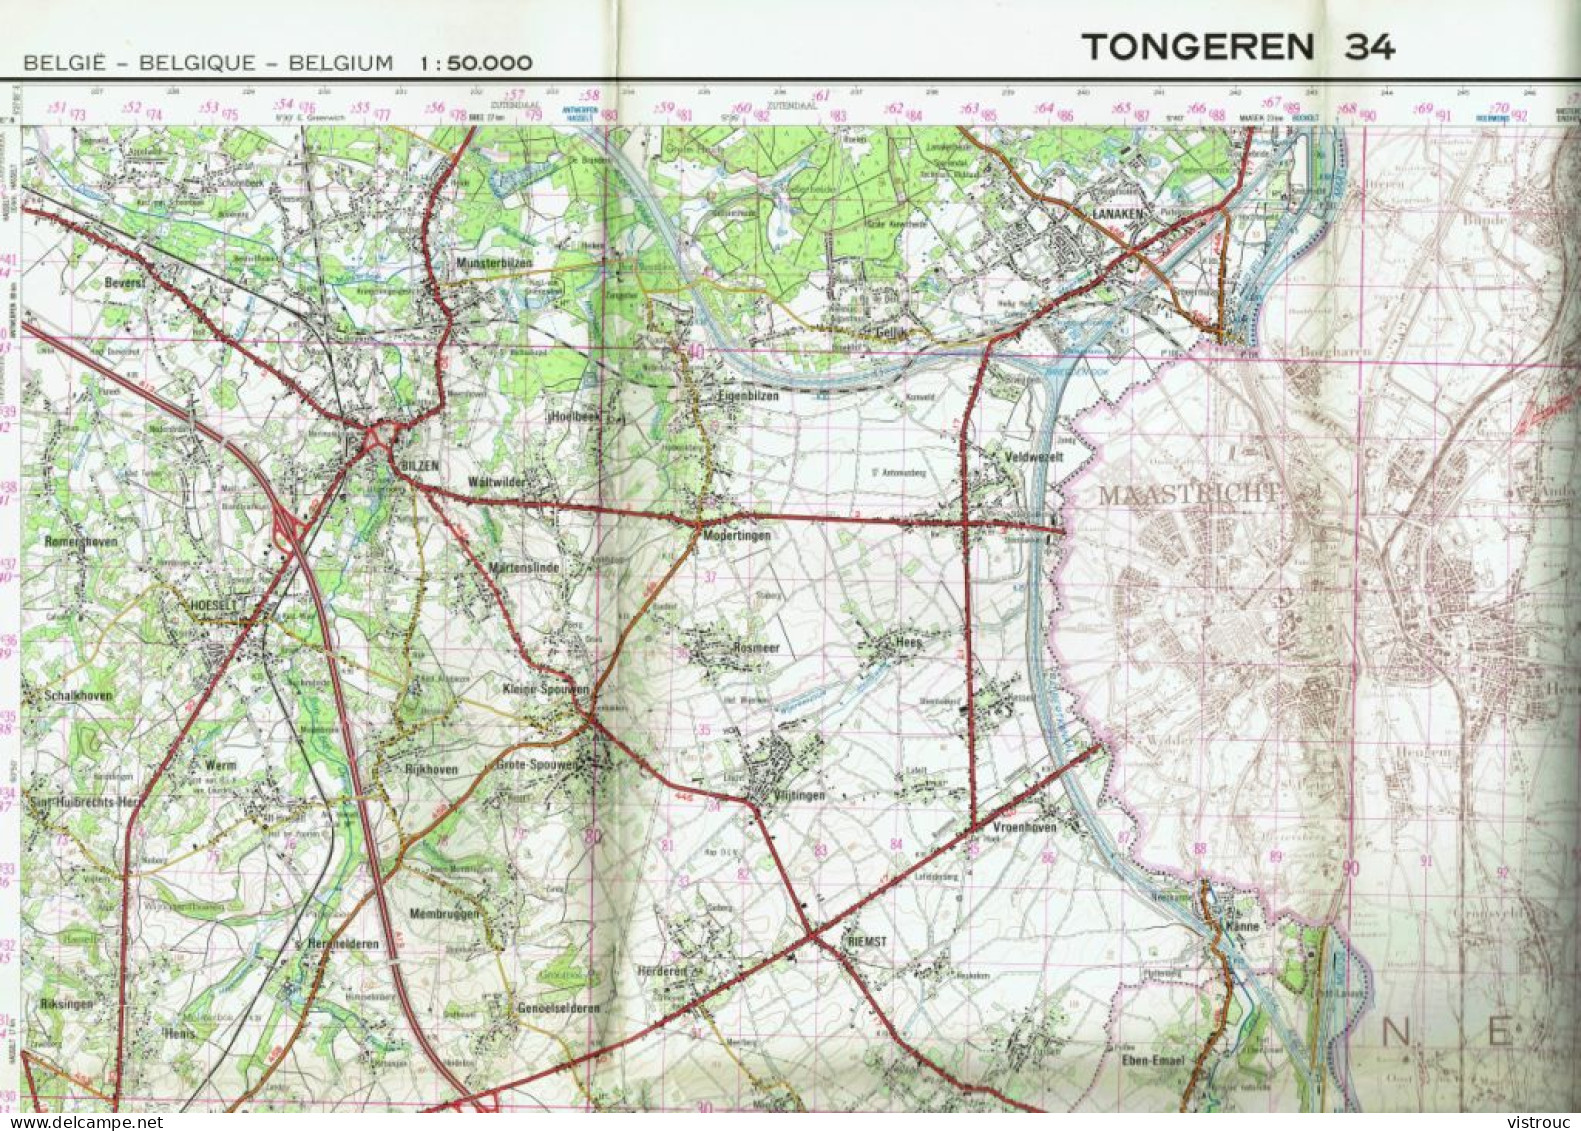 Institut Géographique Militaire Be - "TONGRES-TONGEREN" - N° 34 - Edition: 1977 - Echelle 1/50.000 - Carte Topografiche